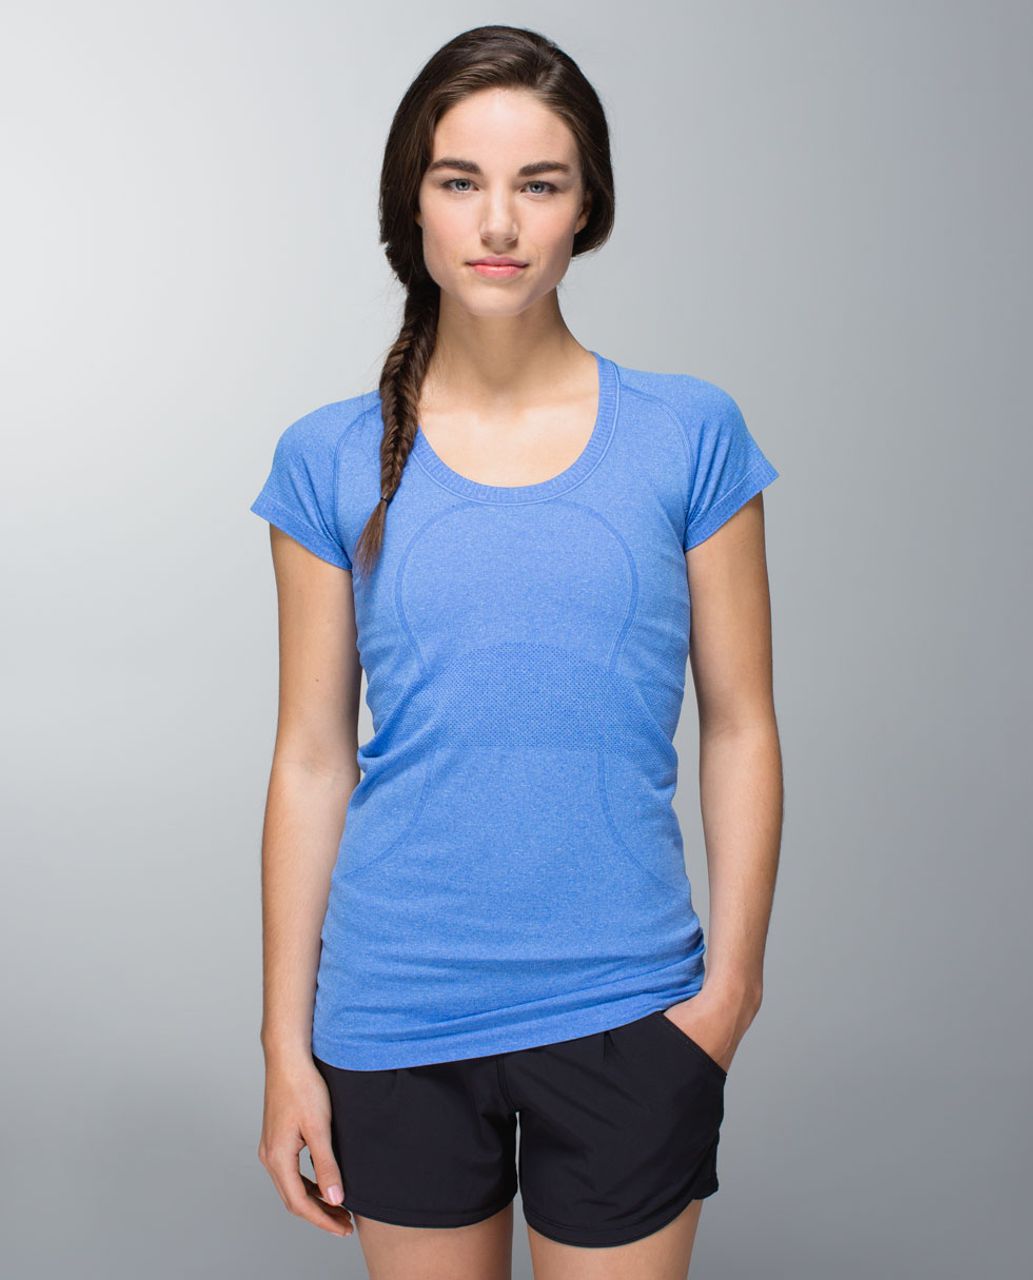 Lululemon Swiftly Tech Short Sleeve Shirt 2.0 - Blue Nile / Blue Nile -  lulu fanatics